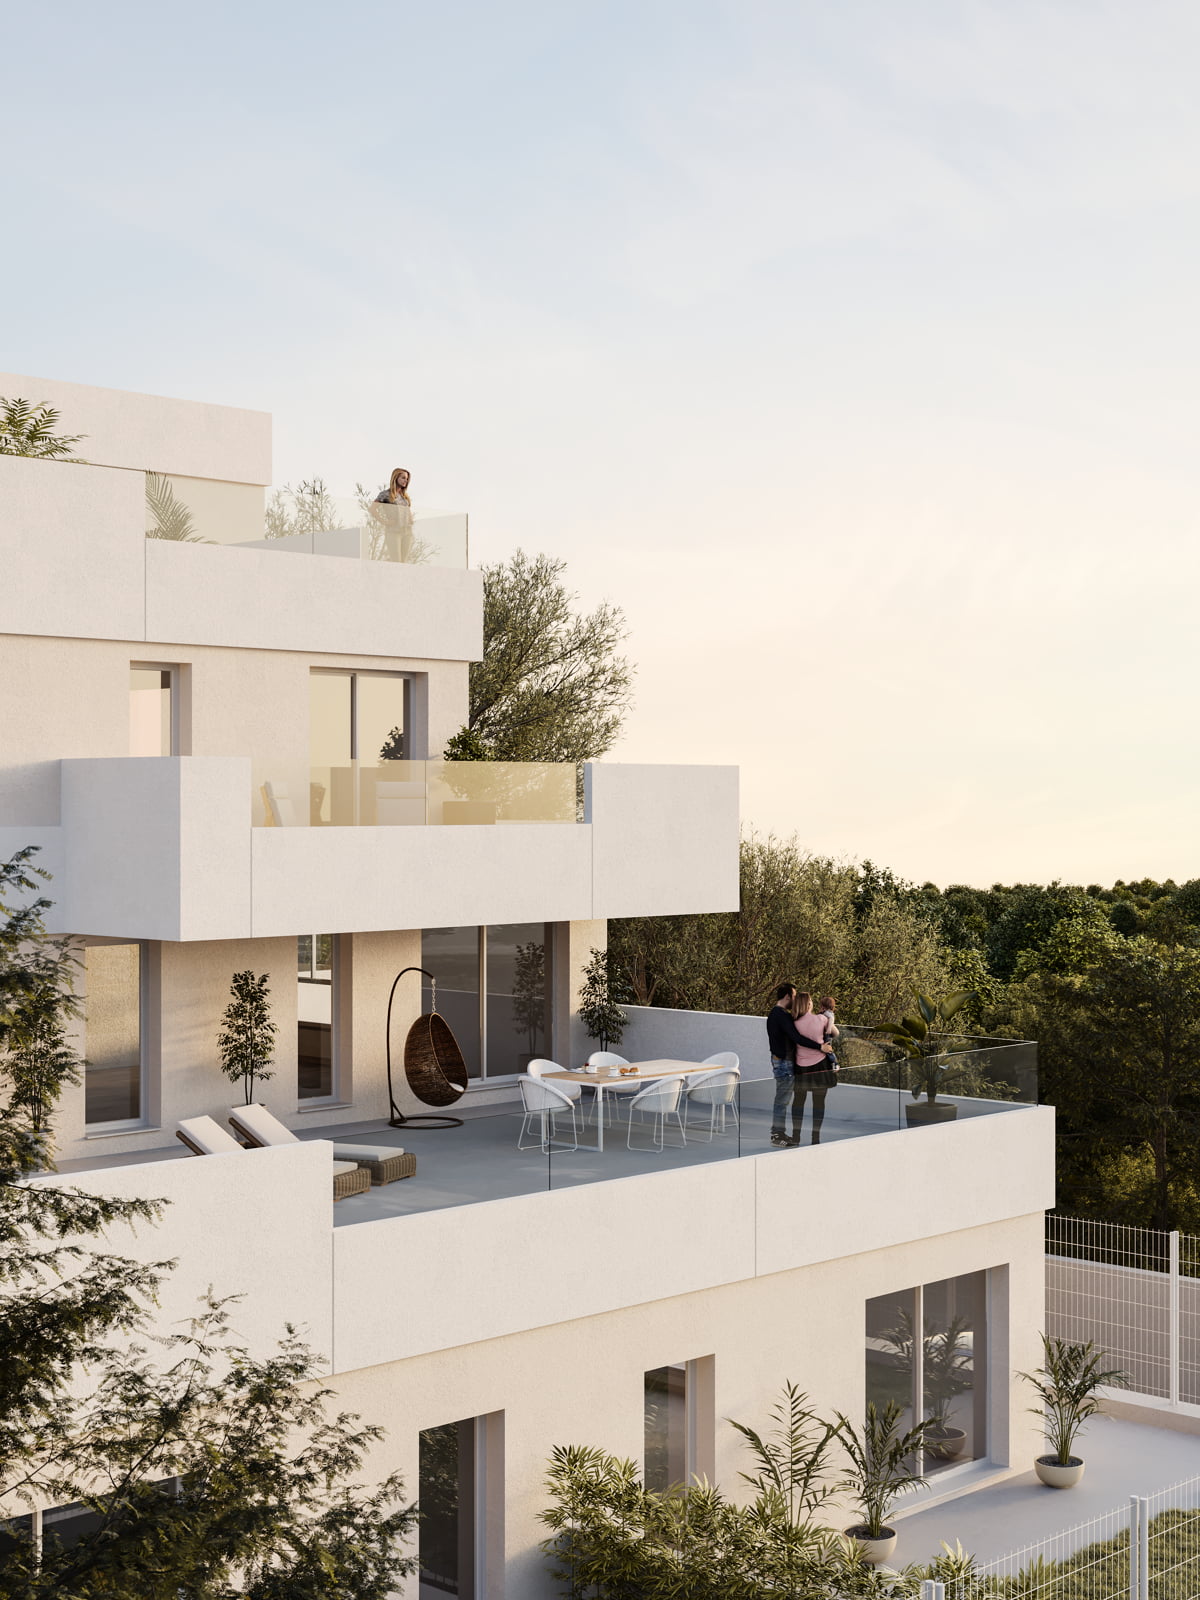 Promoción de obra nueva en Rocafort con amplias terrazas